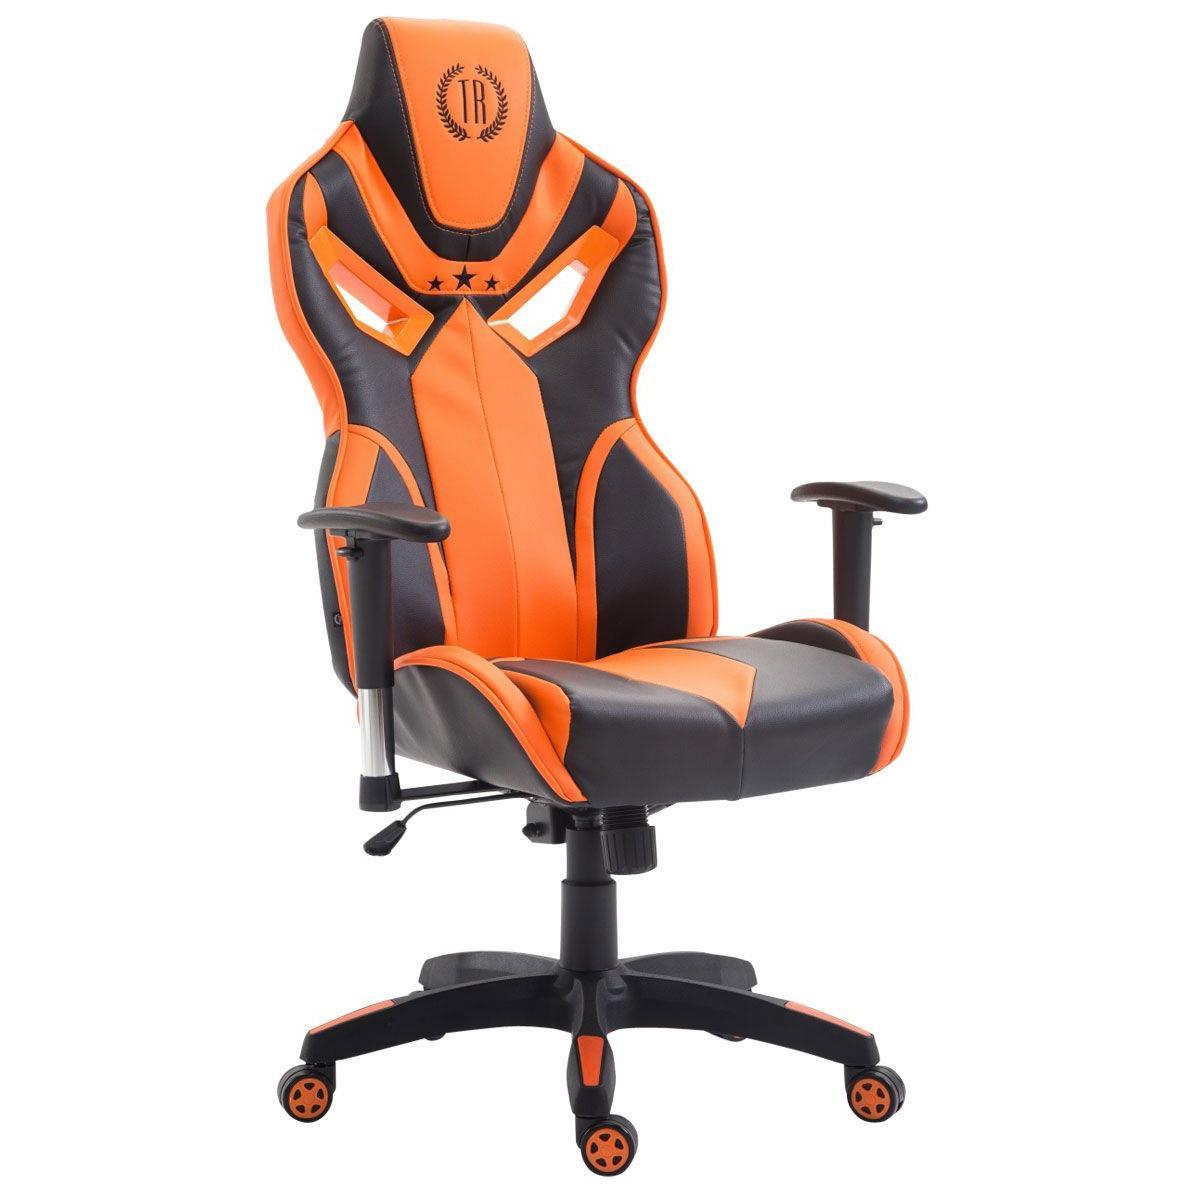 Chaise de Bureau HAMIL CUIR, Design Ergonomique, couleur Noir et Orange